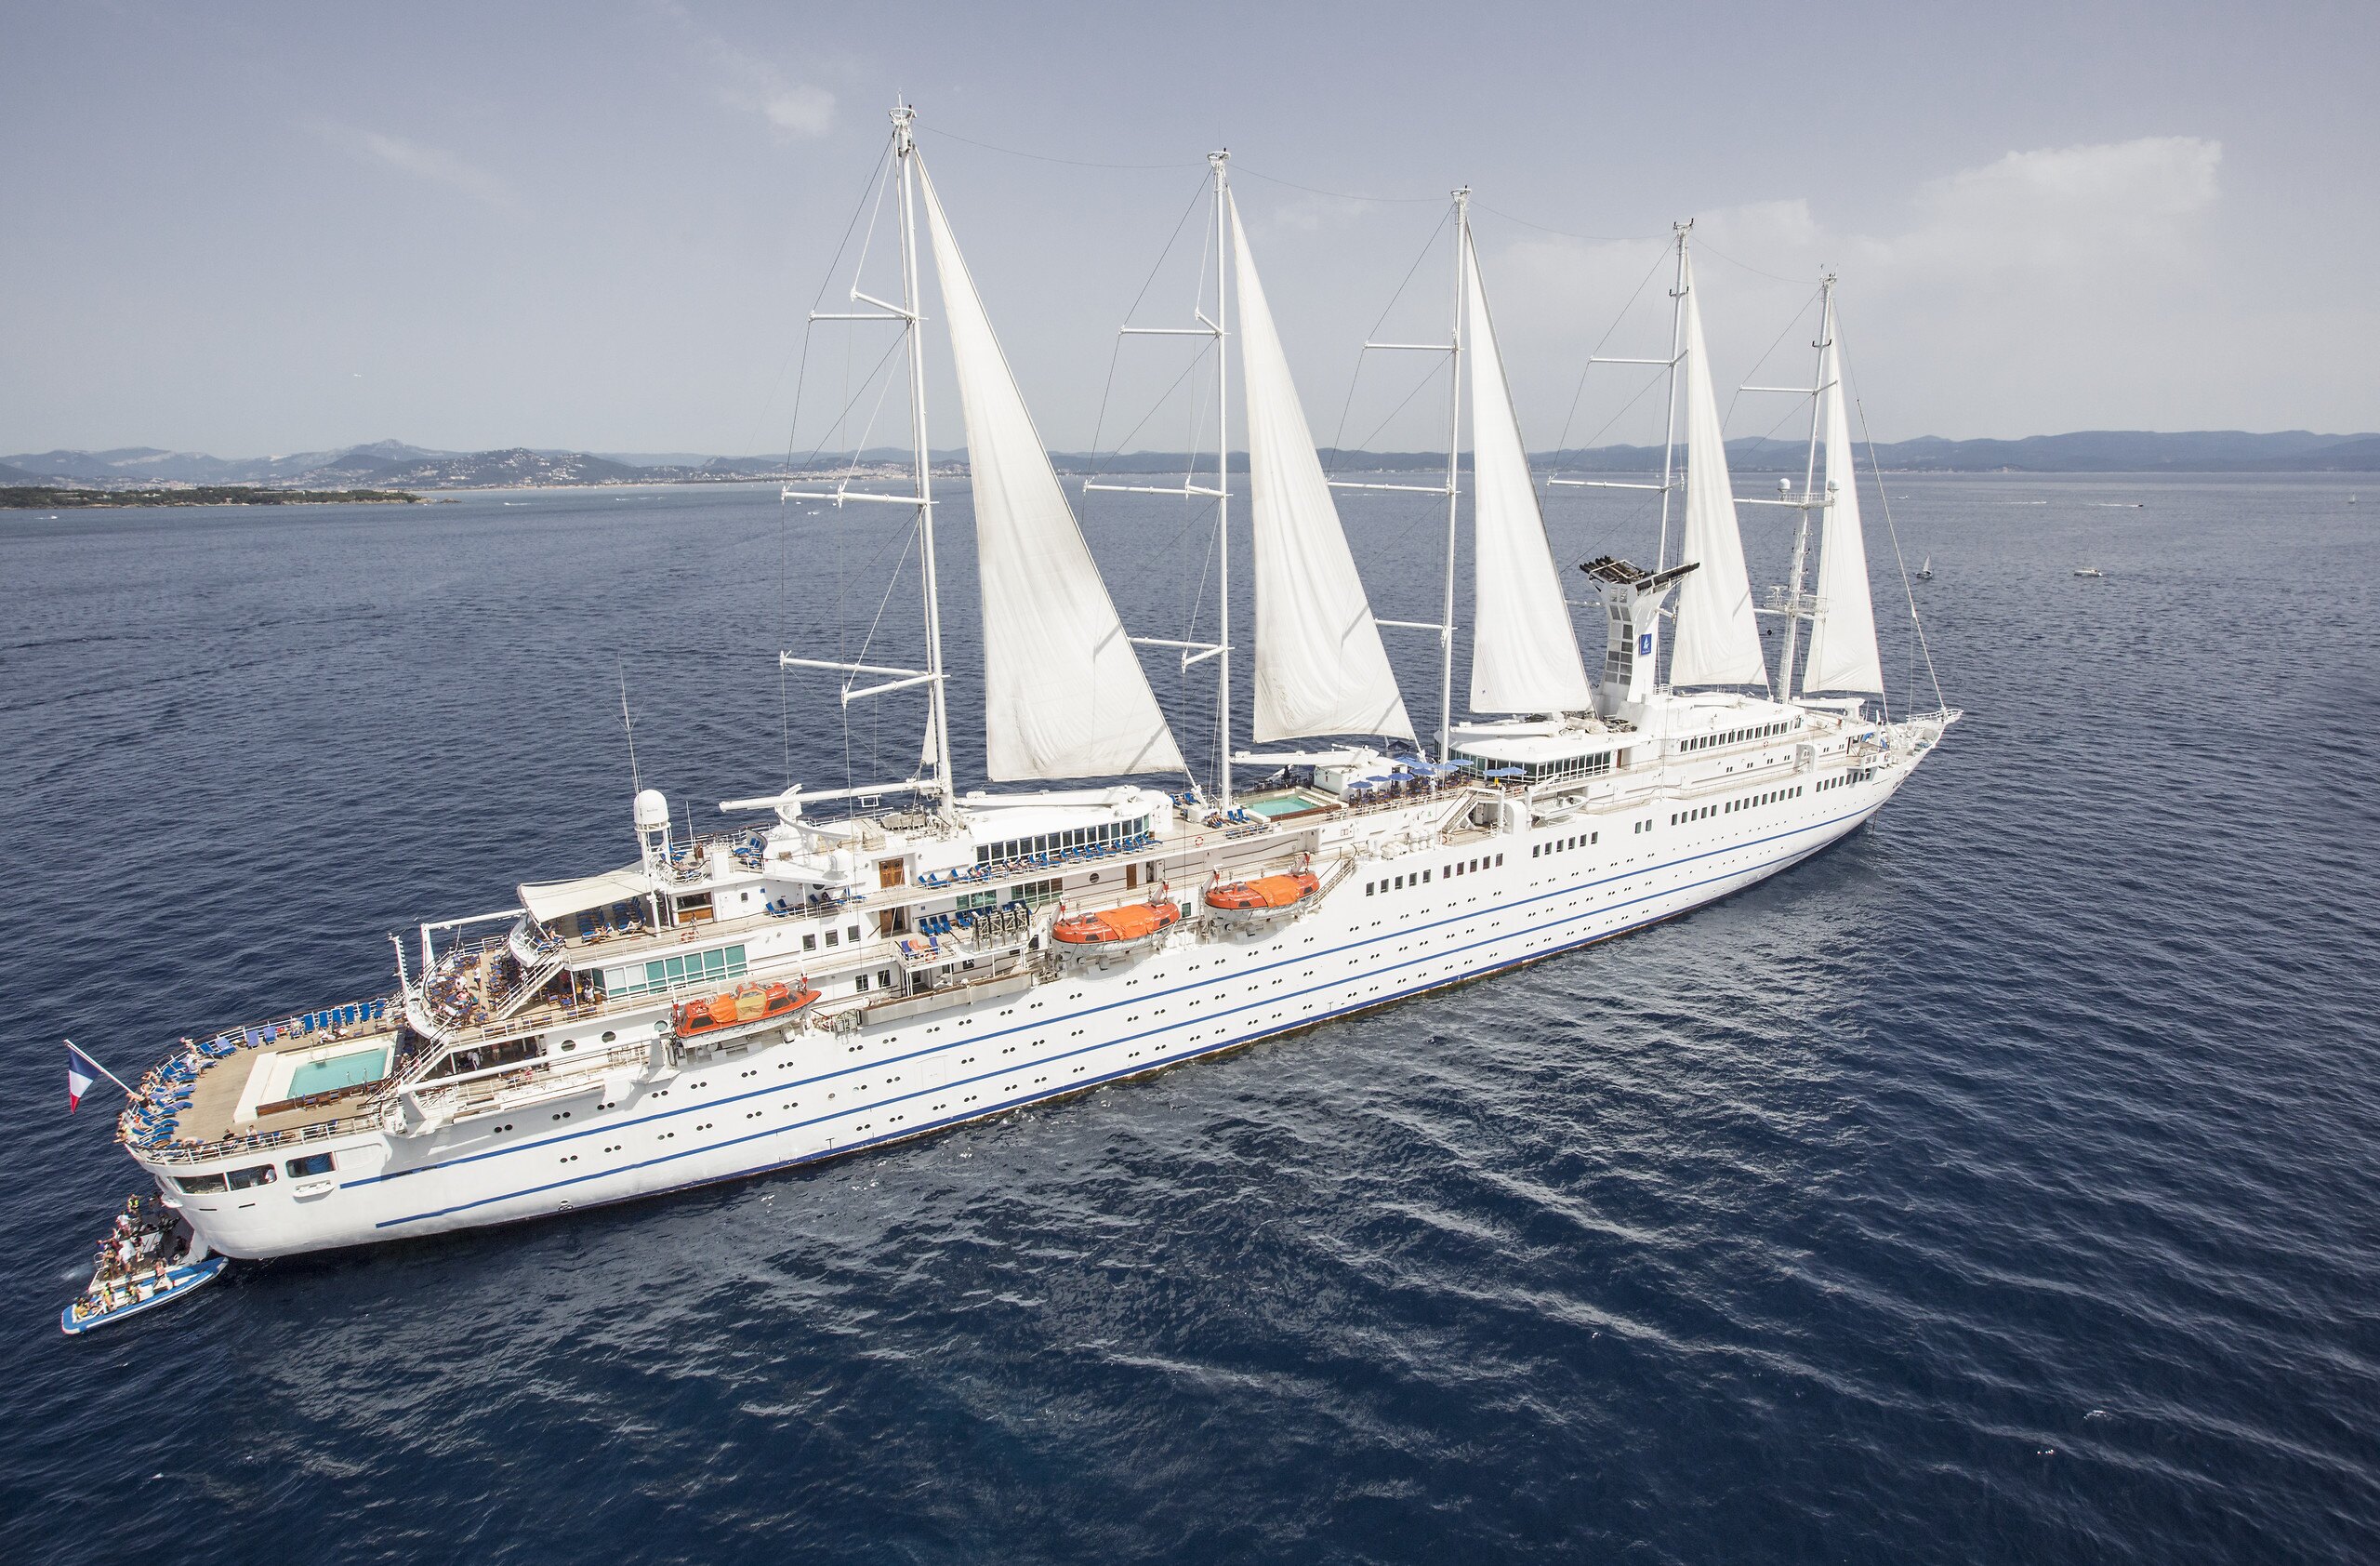     Le bateau de croisière le Club Med 2 quitte la Martinique

